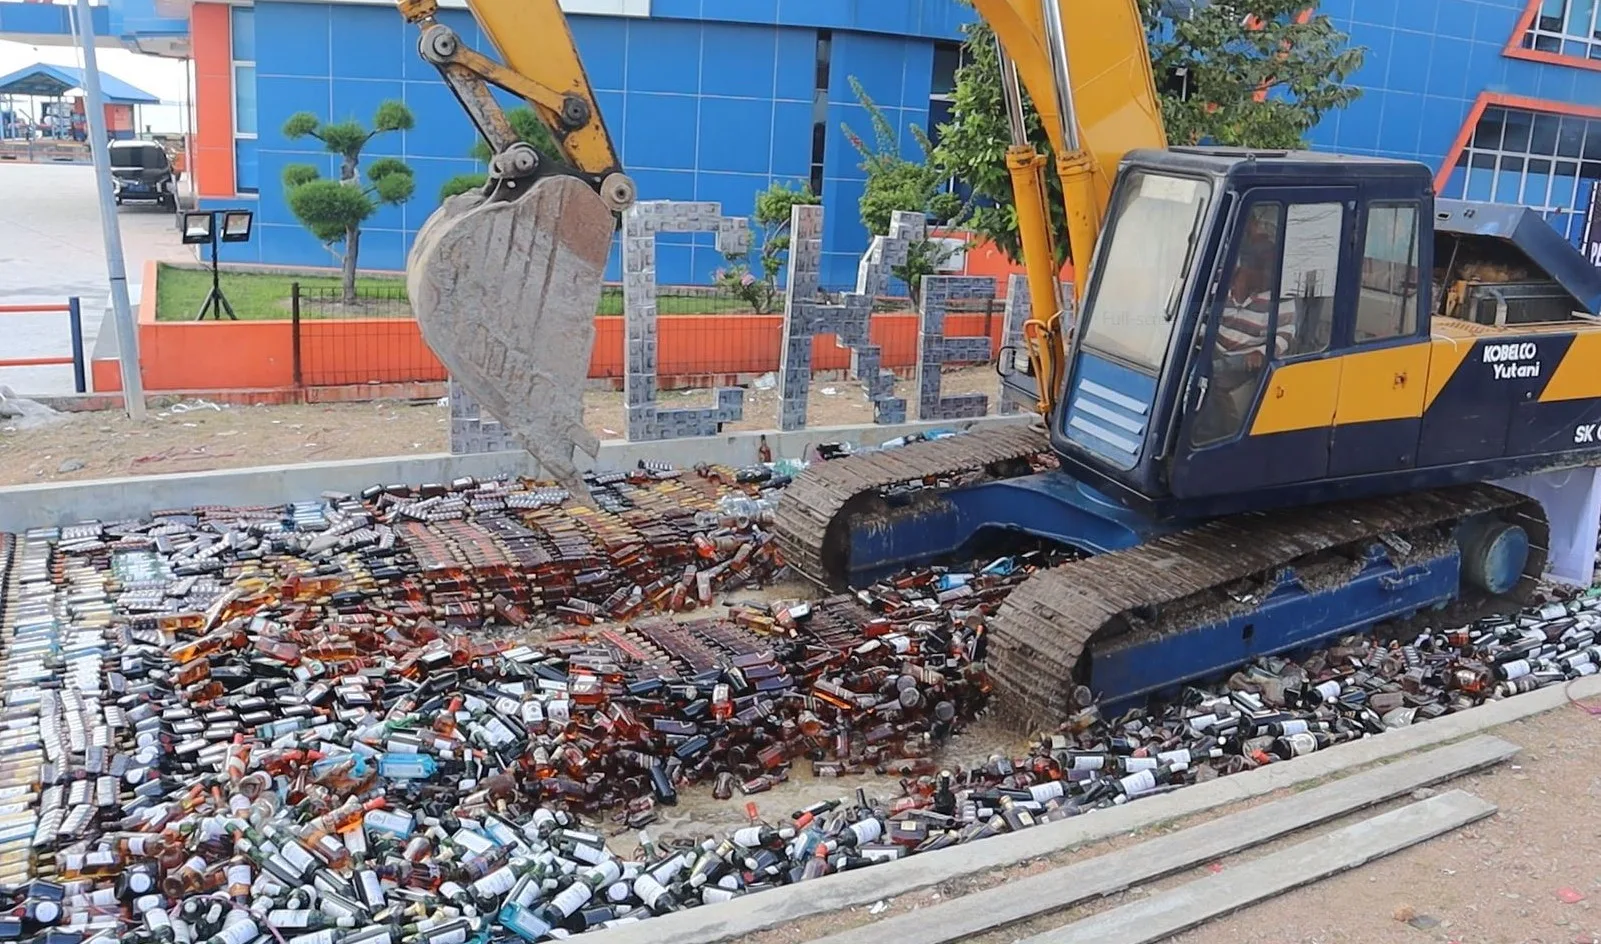 23 ribu botol miras dan 1 juta batang rokok ilegal dimusnahkan dengan cara digilas menggunakan alat berat | Foto: Ami